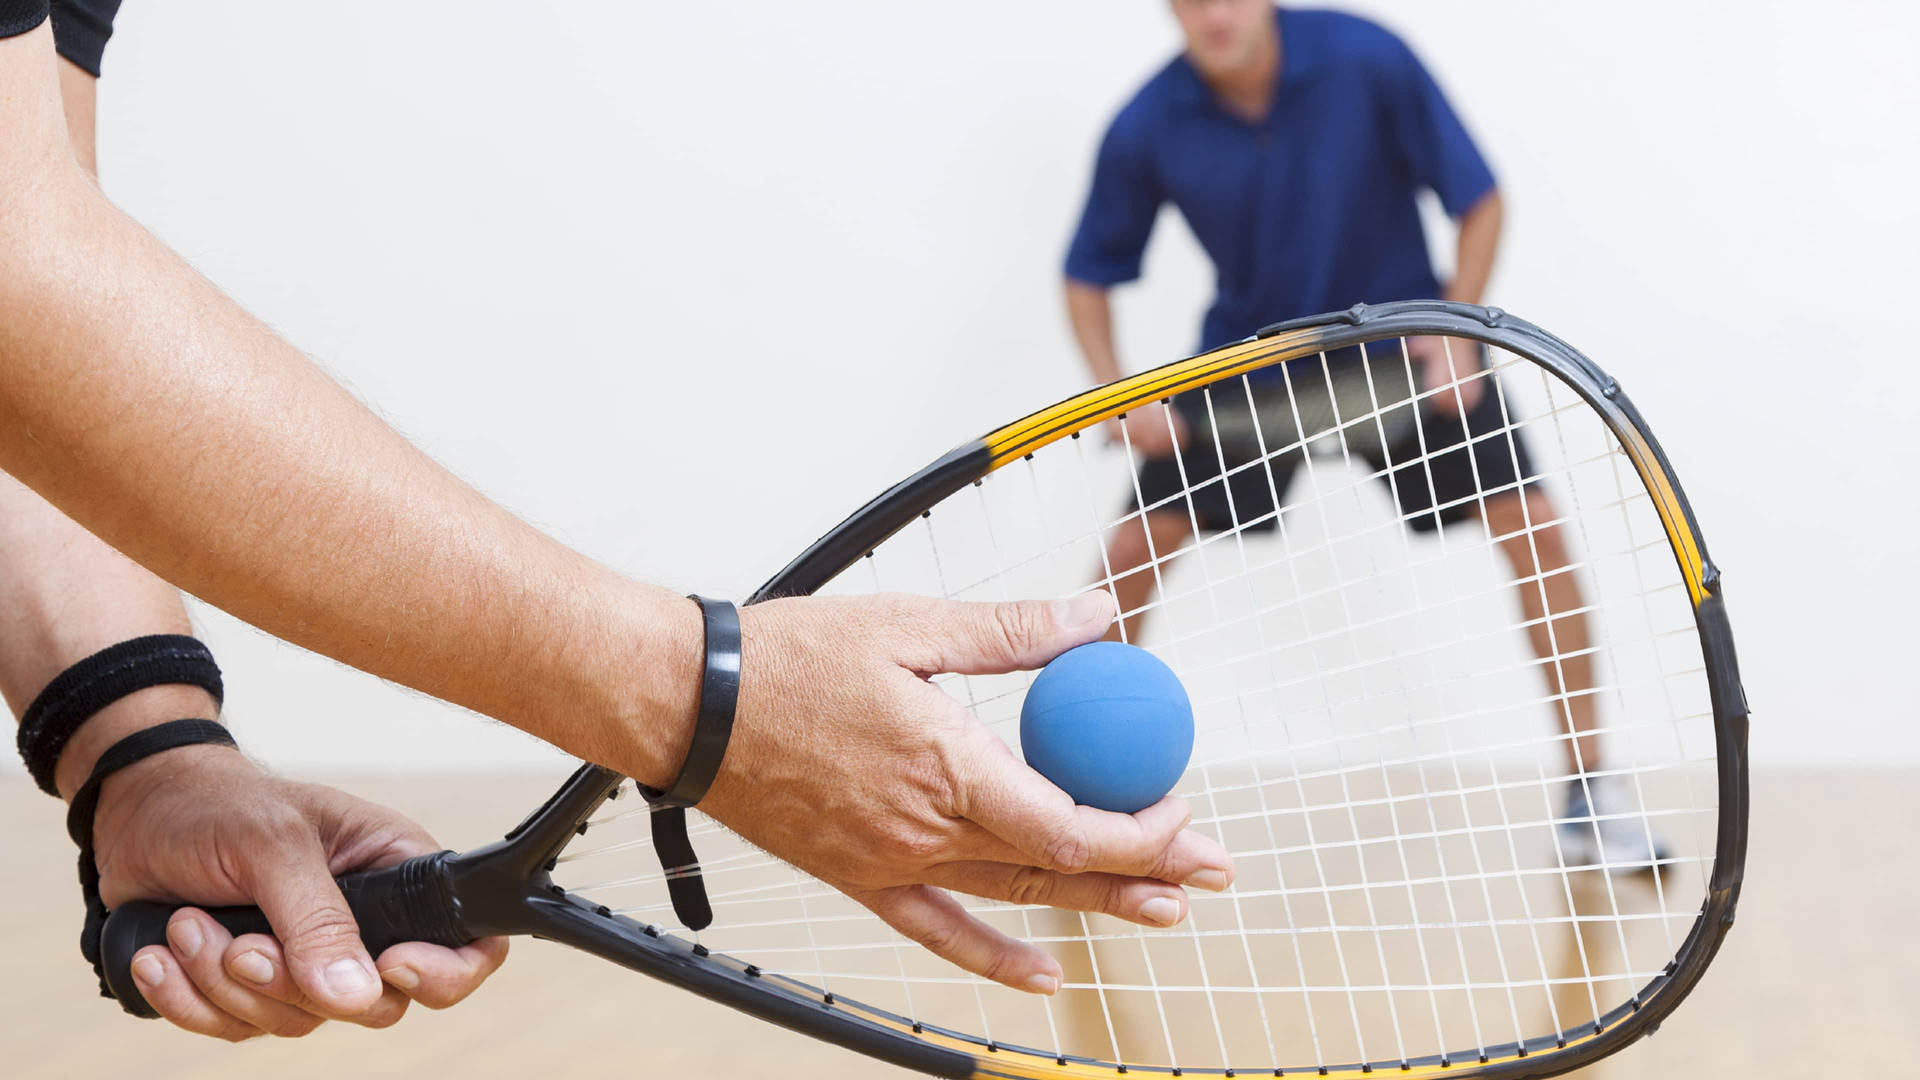 Intense Racquetball Match Between Two Strong Men Wallpaper